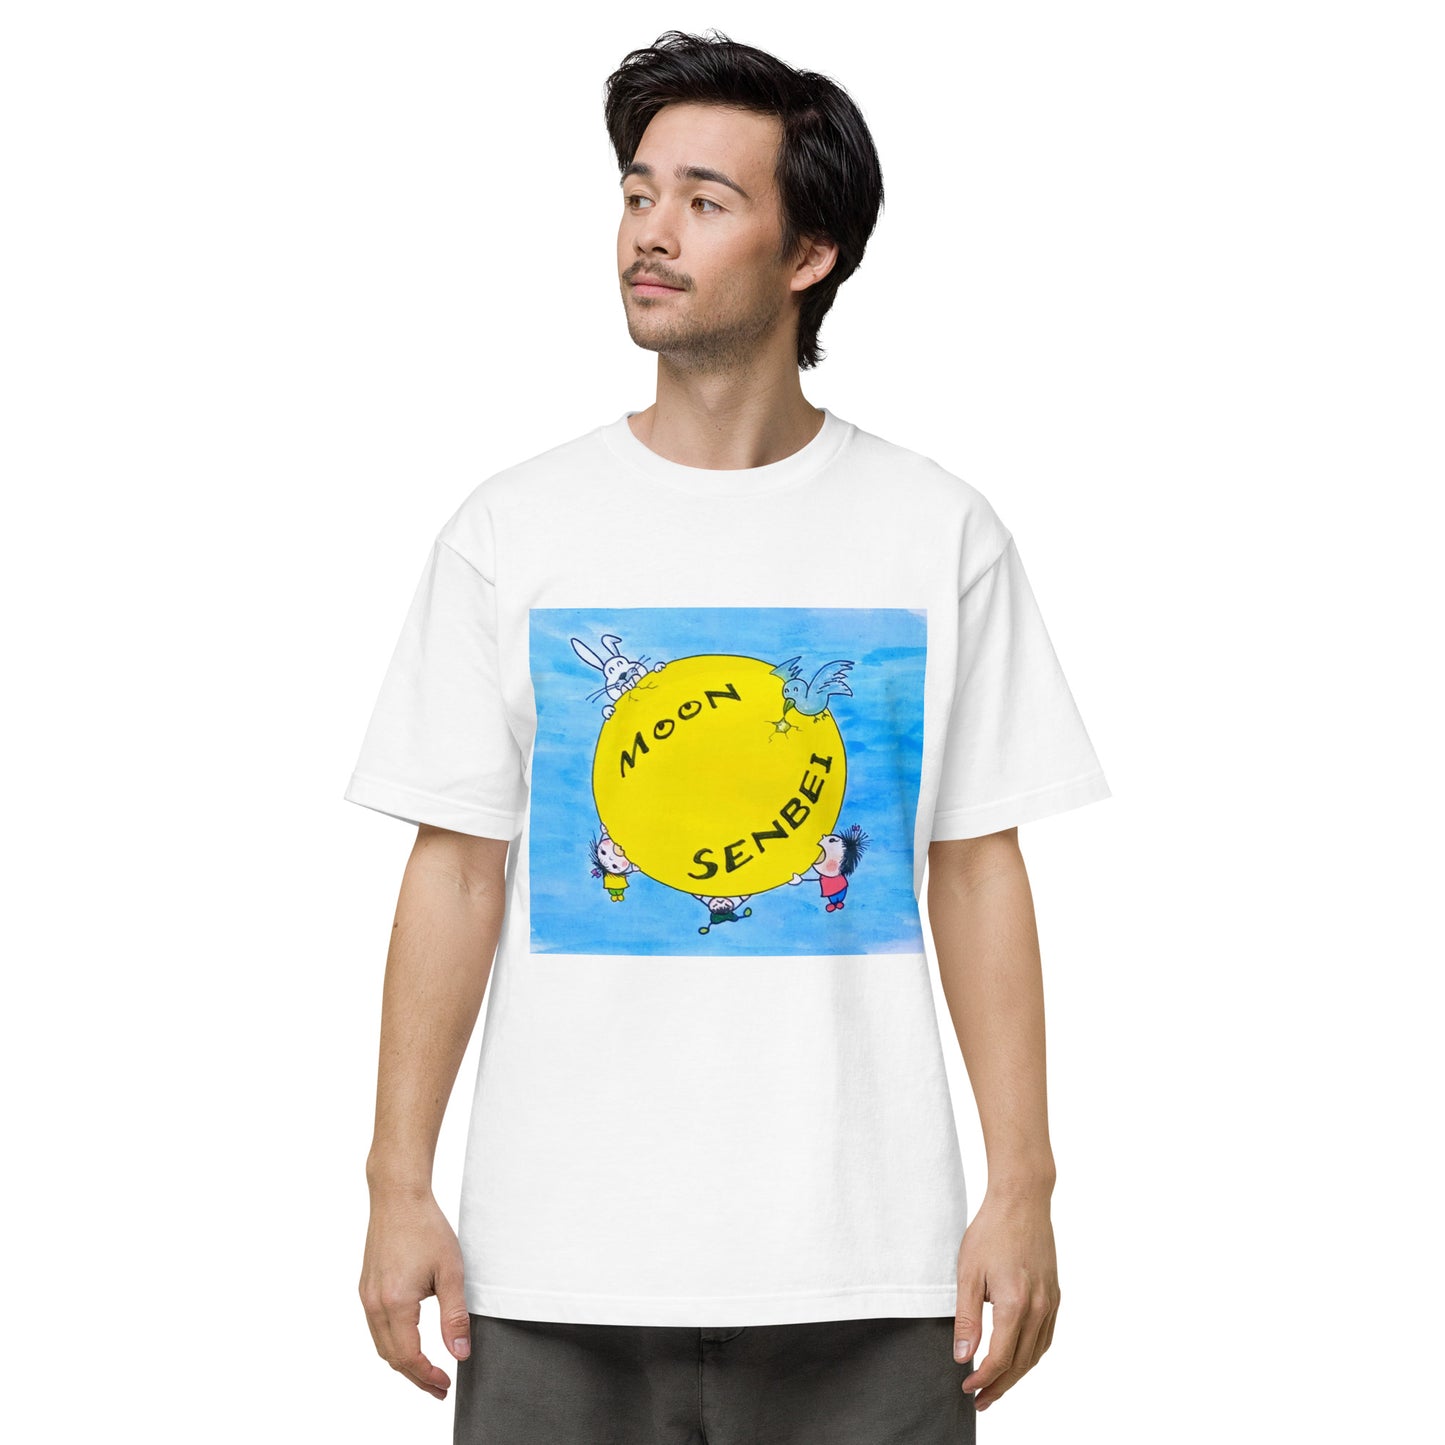 041-junken-2 前面プリント Tシャツ アートをデザイン